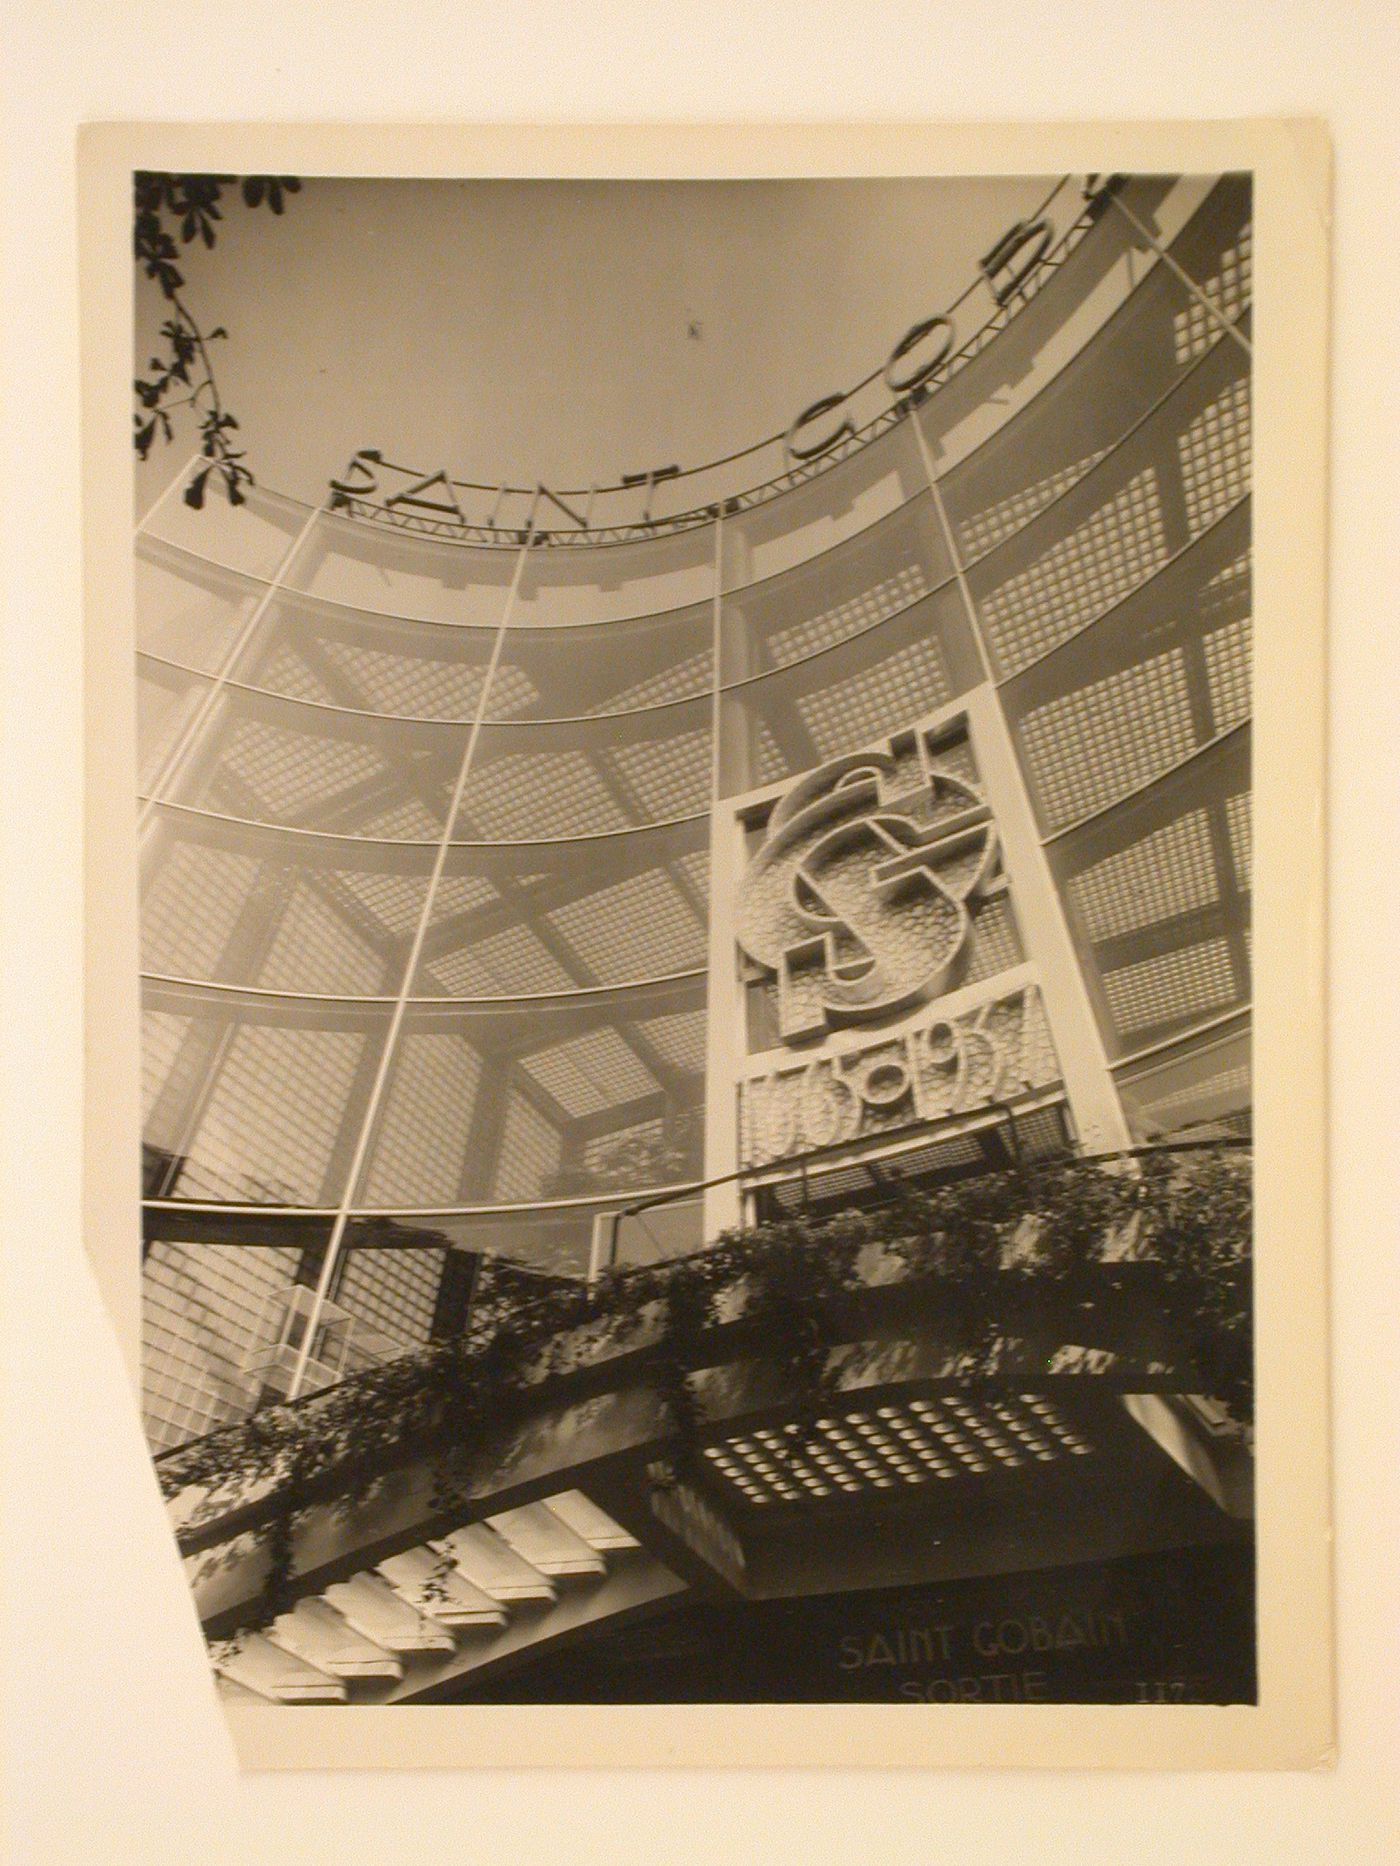 Partial view of a façade of Saint Gobain's pavilion, 1937 Exposition internationale, Paris, France